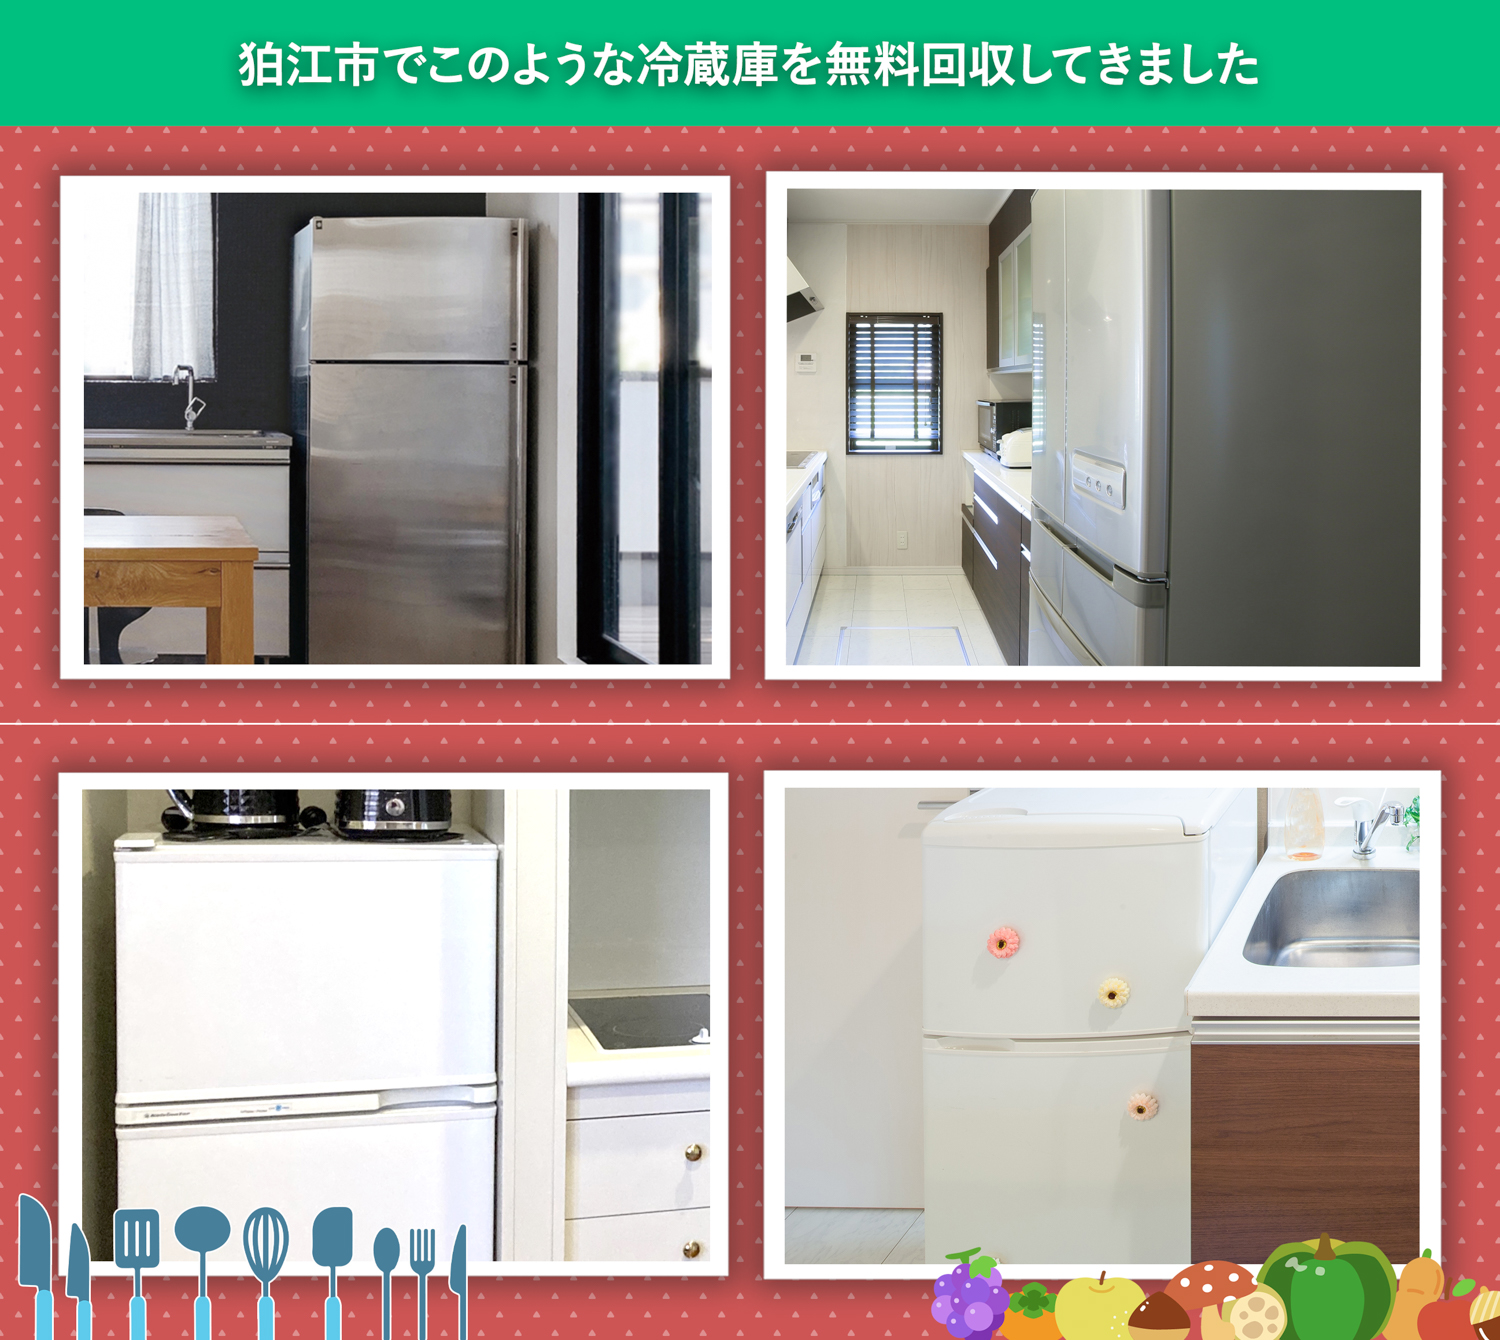 狛江市でこのような冷蔵庫を無料回収してきました。